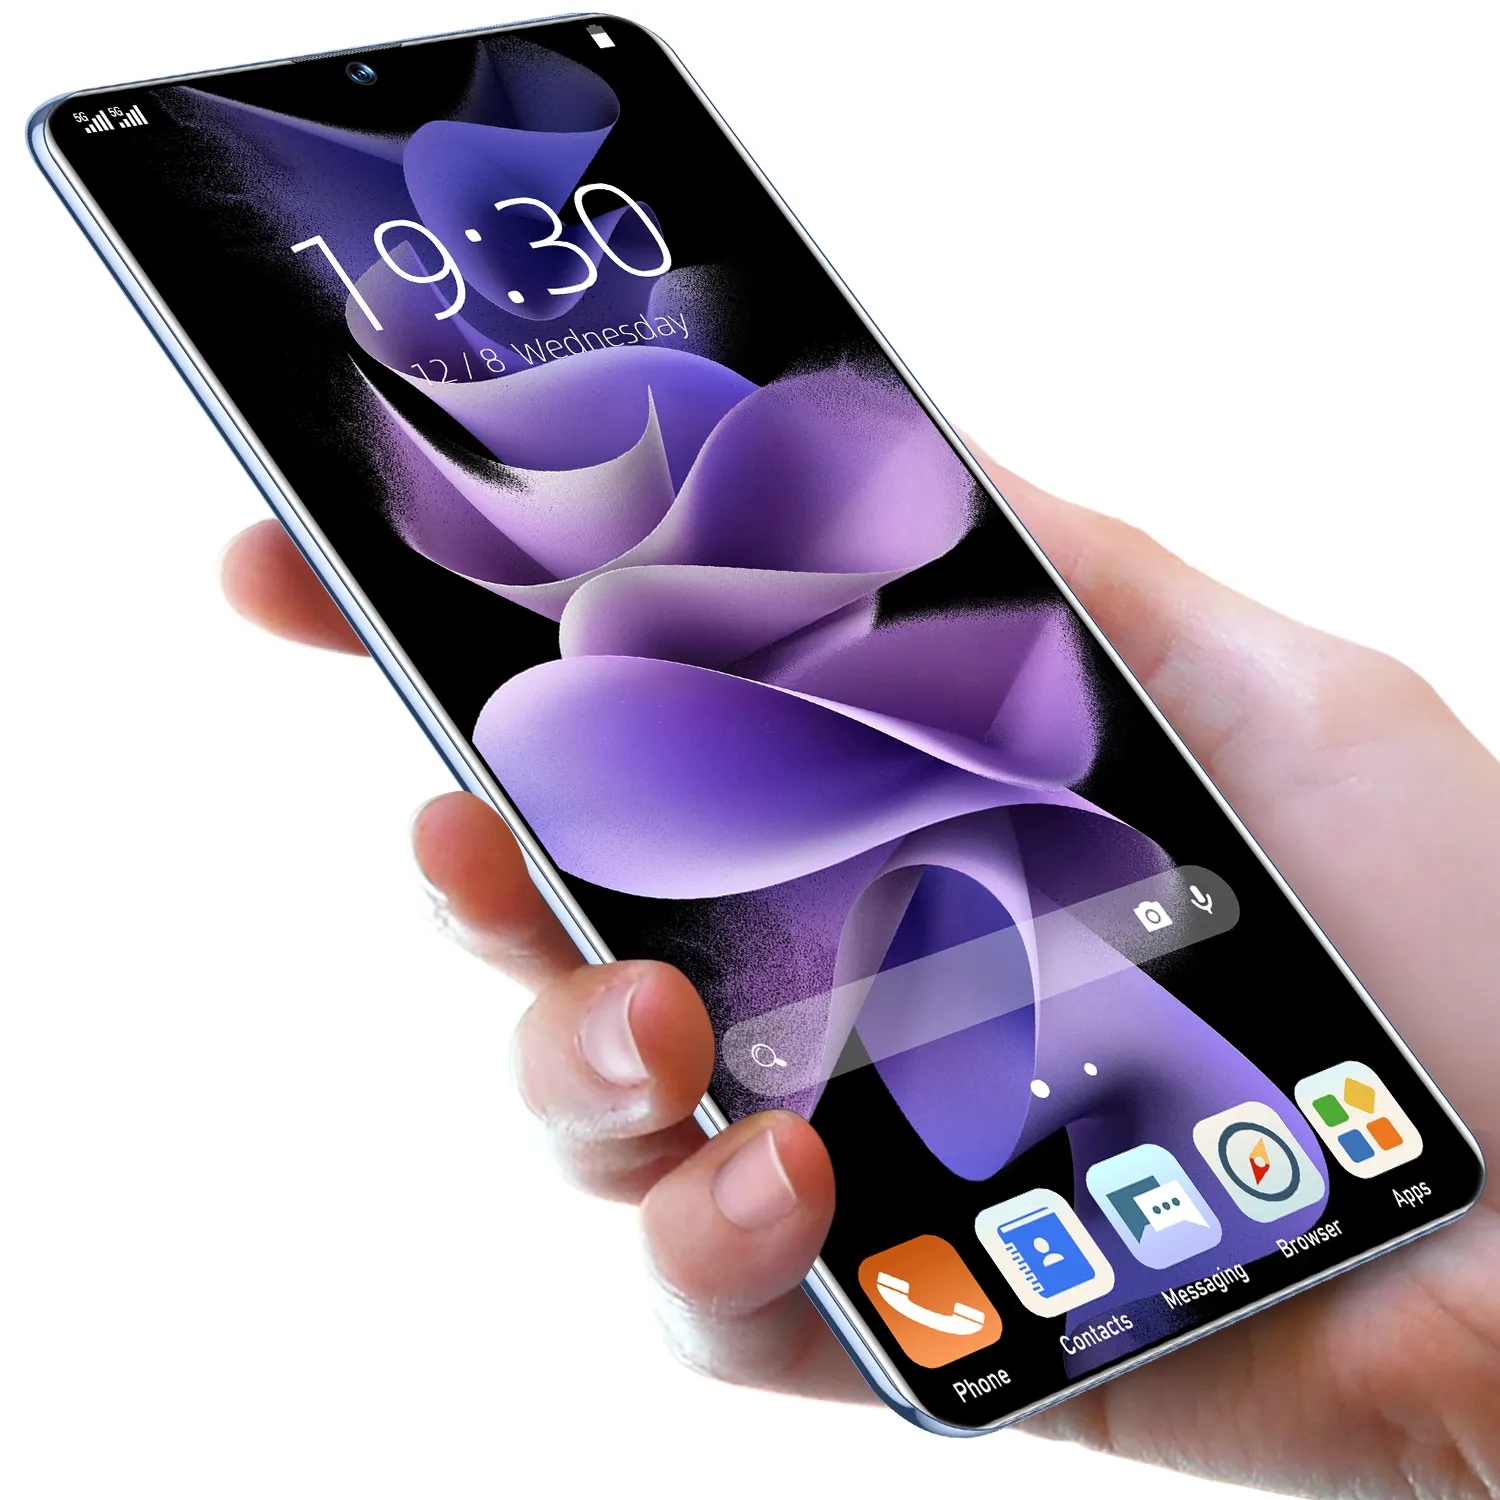 Low Moq Best Business Cell Phone Company Provider 3G AndroidMobile Camera Design 2021 aziende per anziani per lavorare offerte telefono